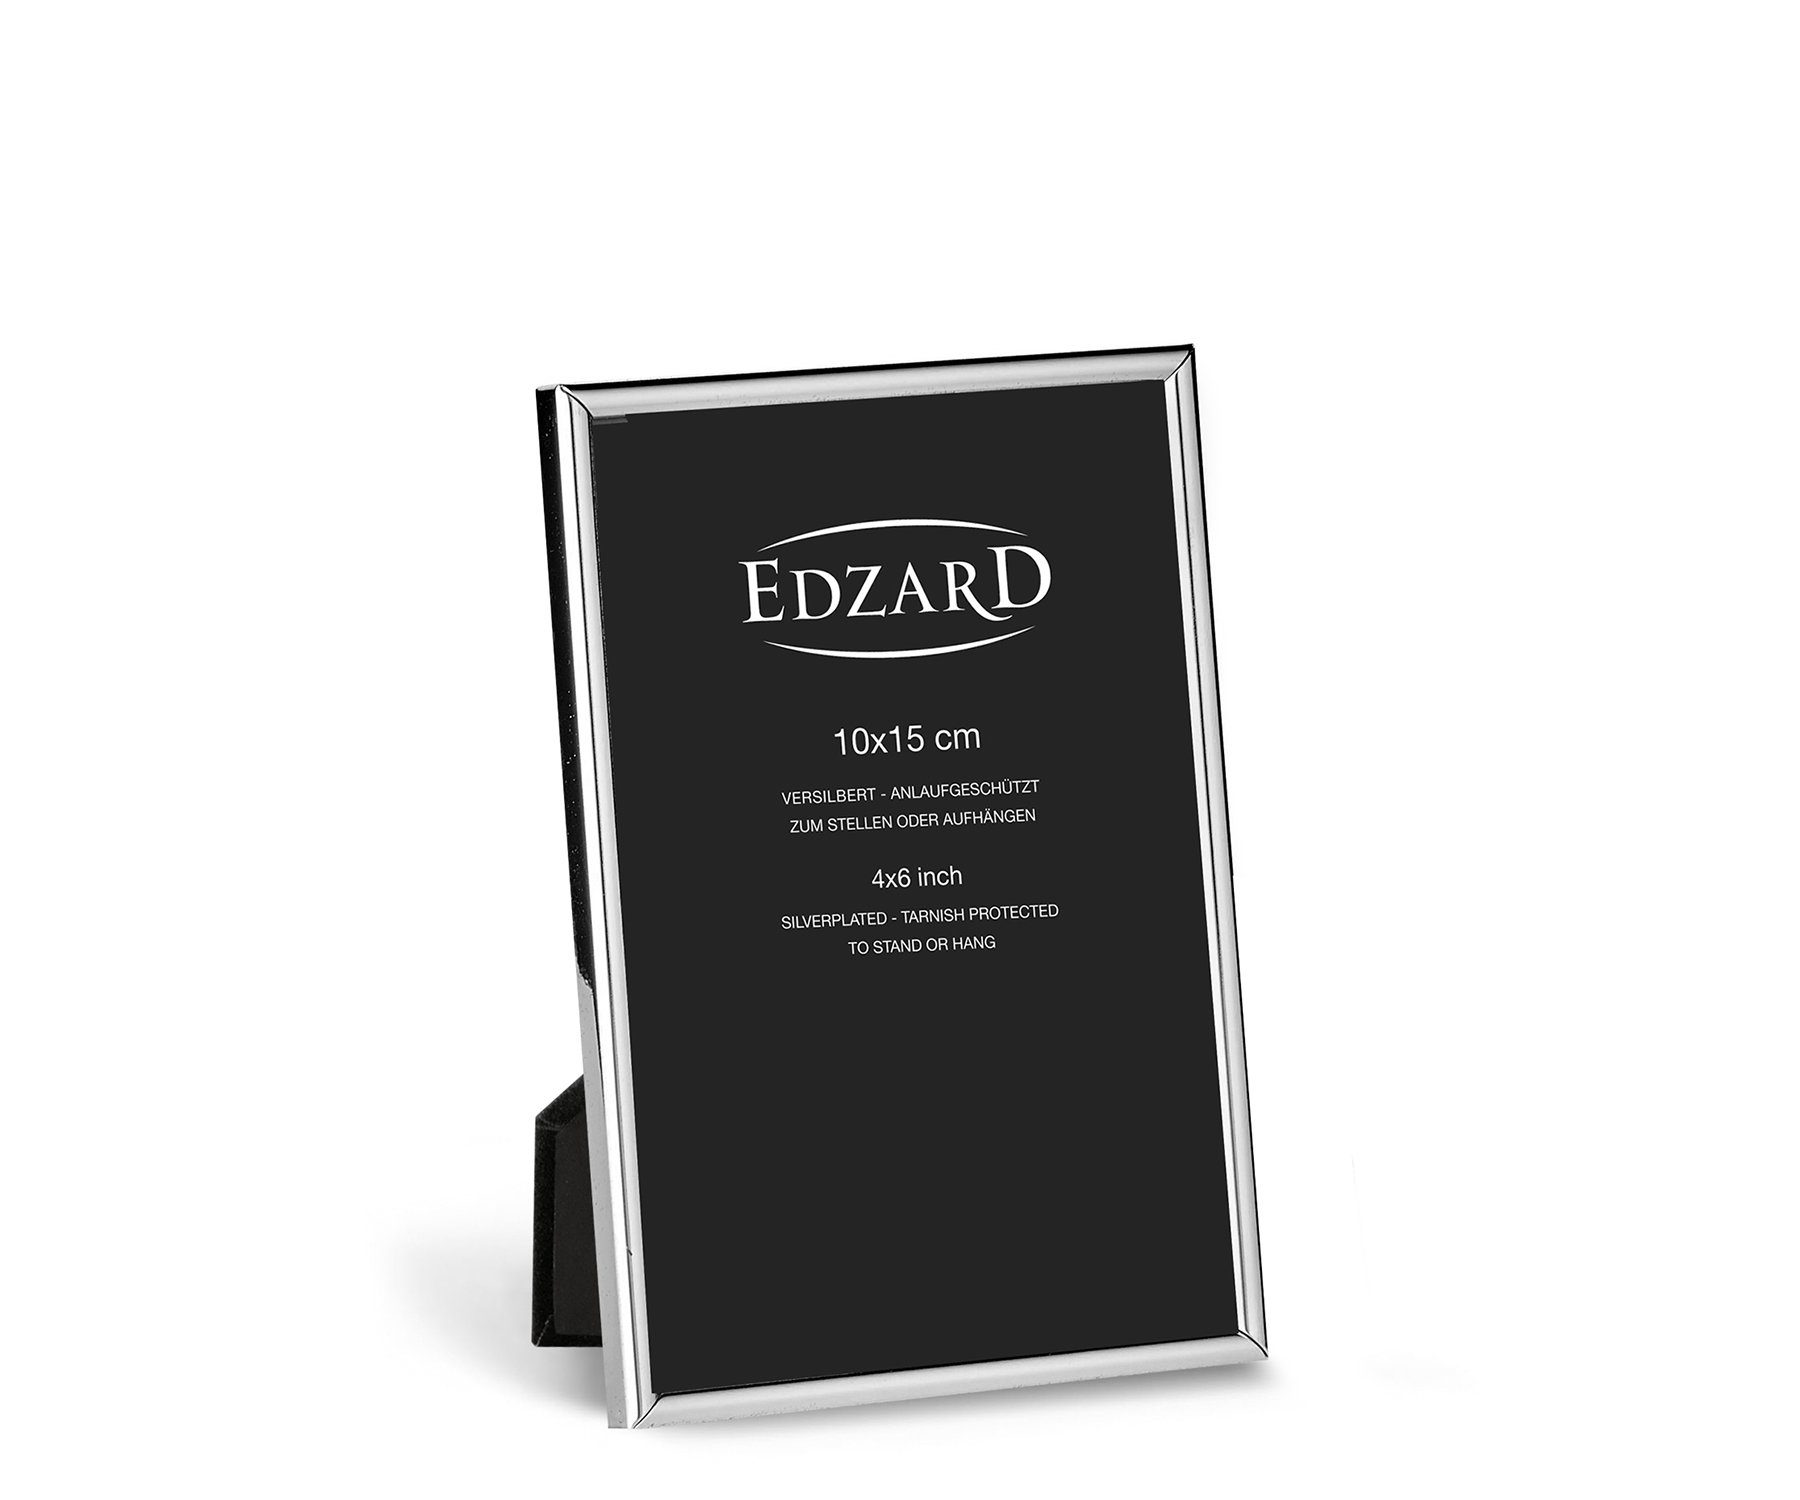 EDZARD Bilderrahmen Genua, versilbert und anlaufgeschützt, für 10x15 cm Foto